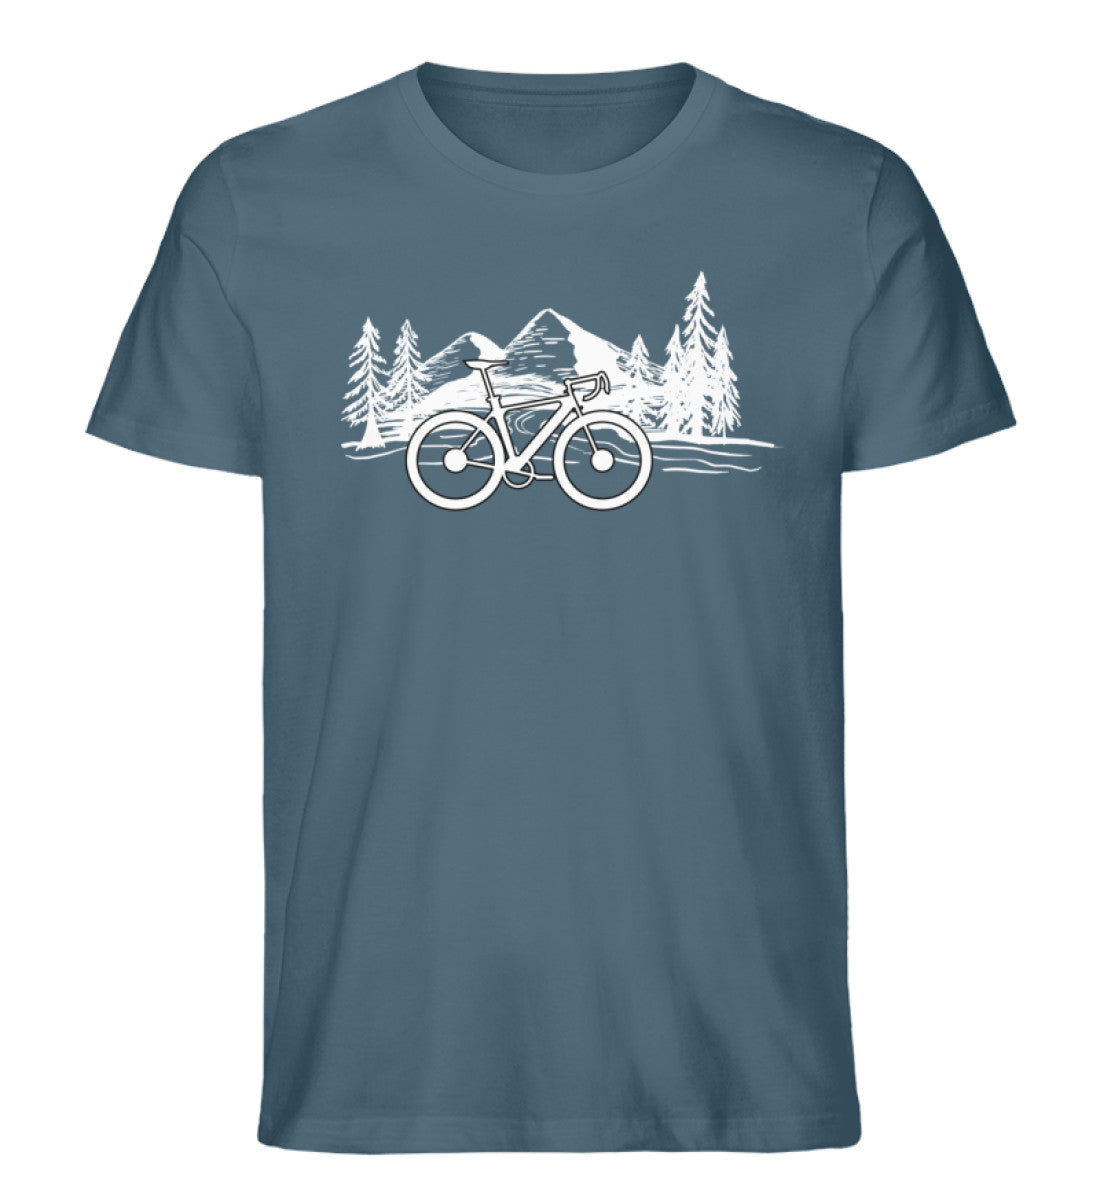 Fahrrad und Berge - Herren Premium Organic T-Shirt fahrrad mountainbike Stargazer